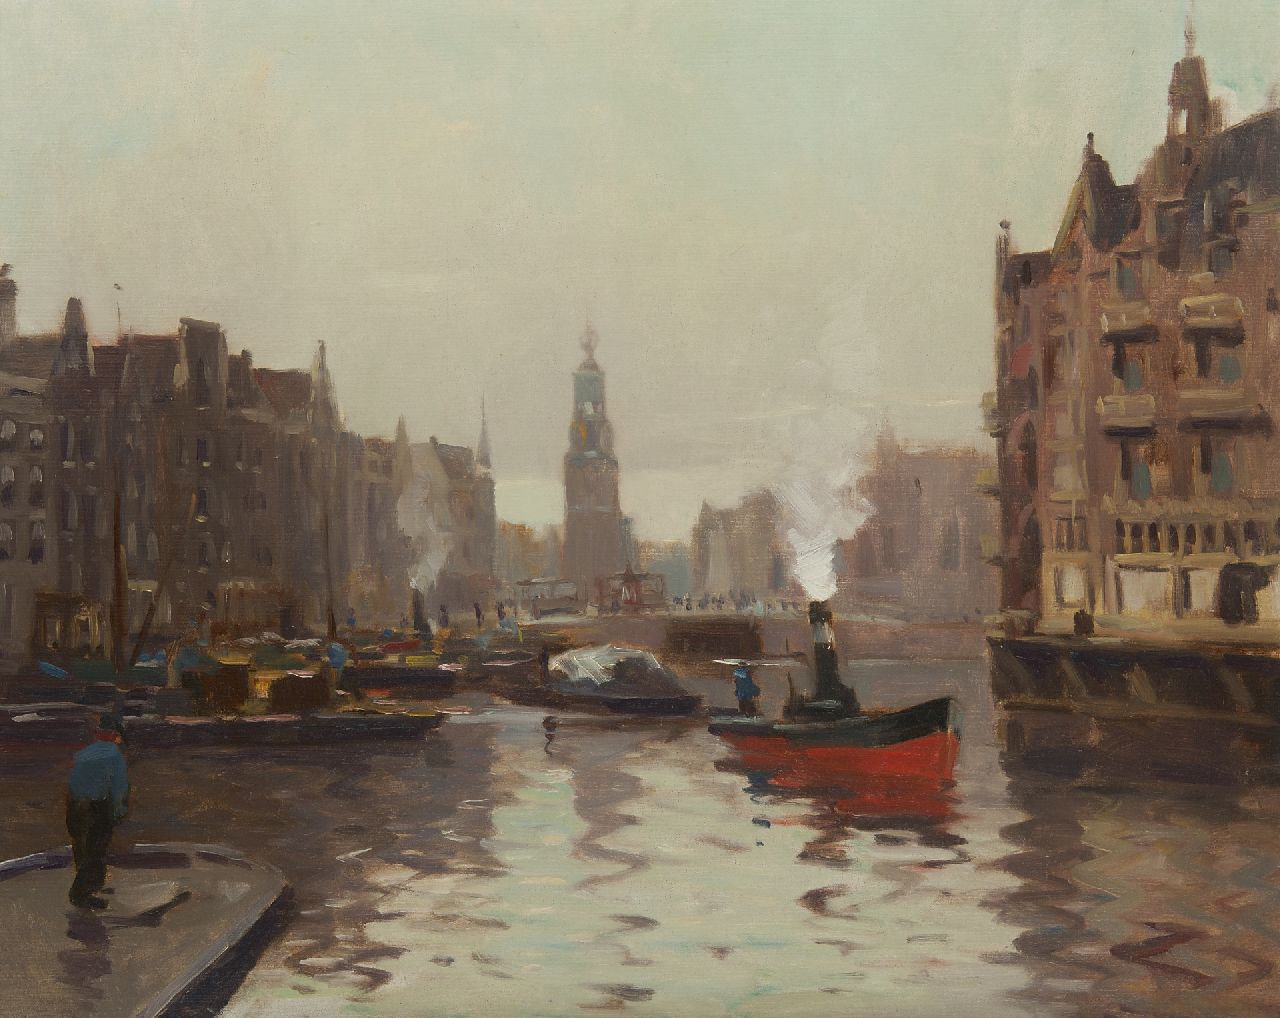 Ligtelijn E.J.  | Evert Jan Ligtelijn, A view on the Munttoren, oil on canvas 59.4 x 73.4 cm